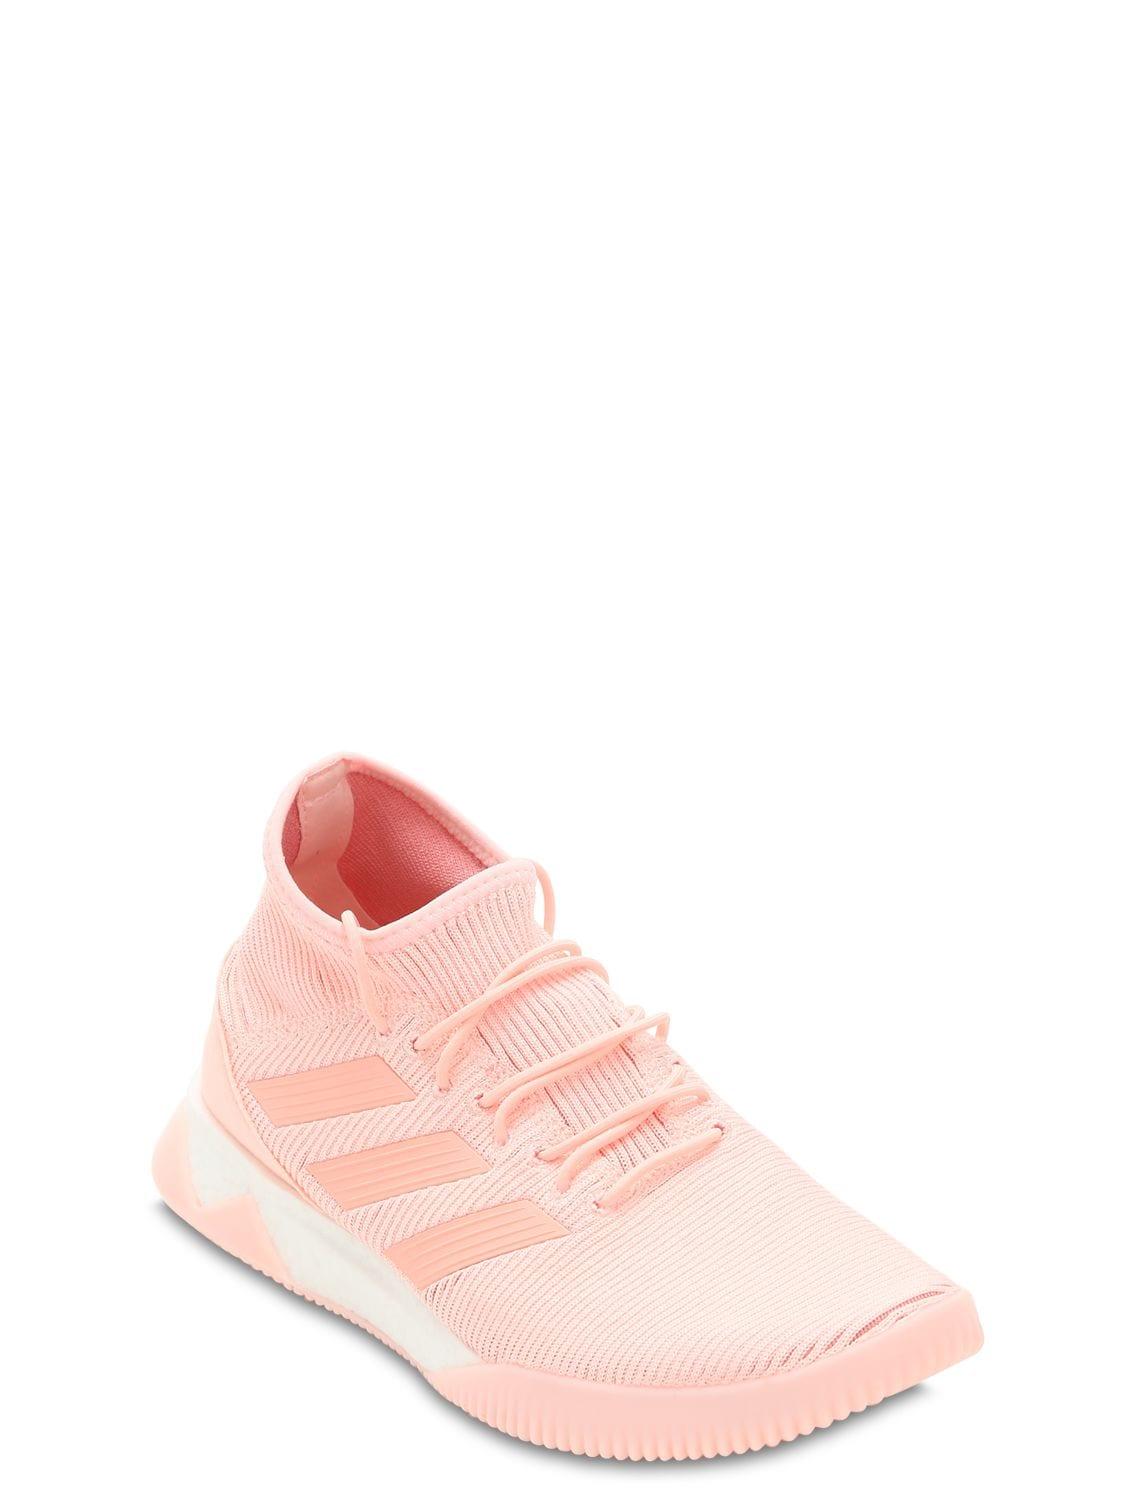 adidas Originals Predator Tango 18.1 Boost Sneakers in Pink for Men - Lyst